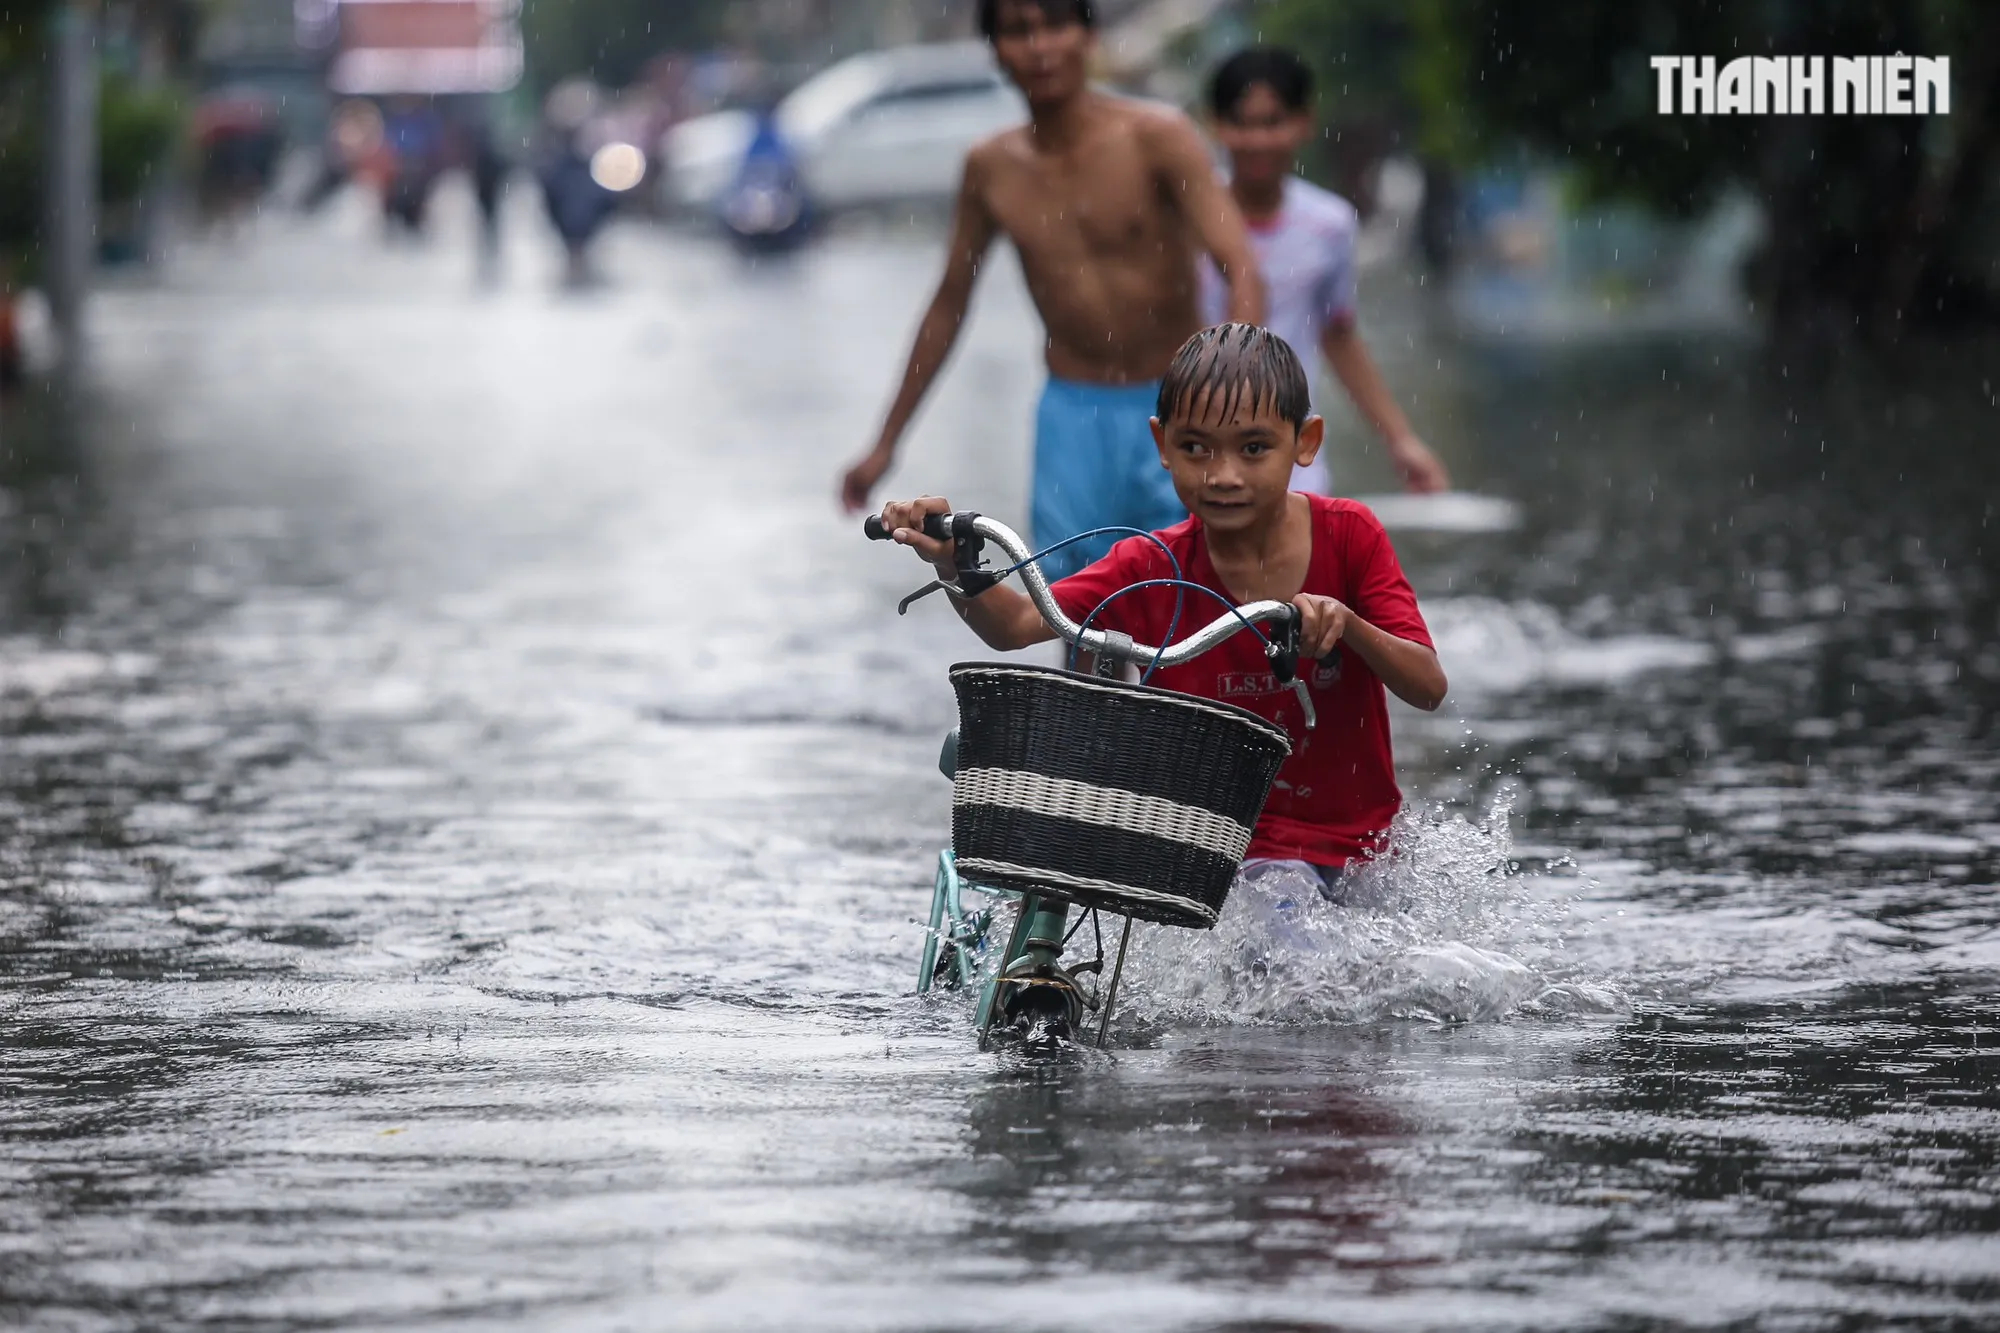 TP.HCM có mưa cực to: Nước ngập quá bánh xe, người dân chật vật giữa 'biển nước' - Ảnh 1.